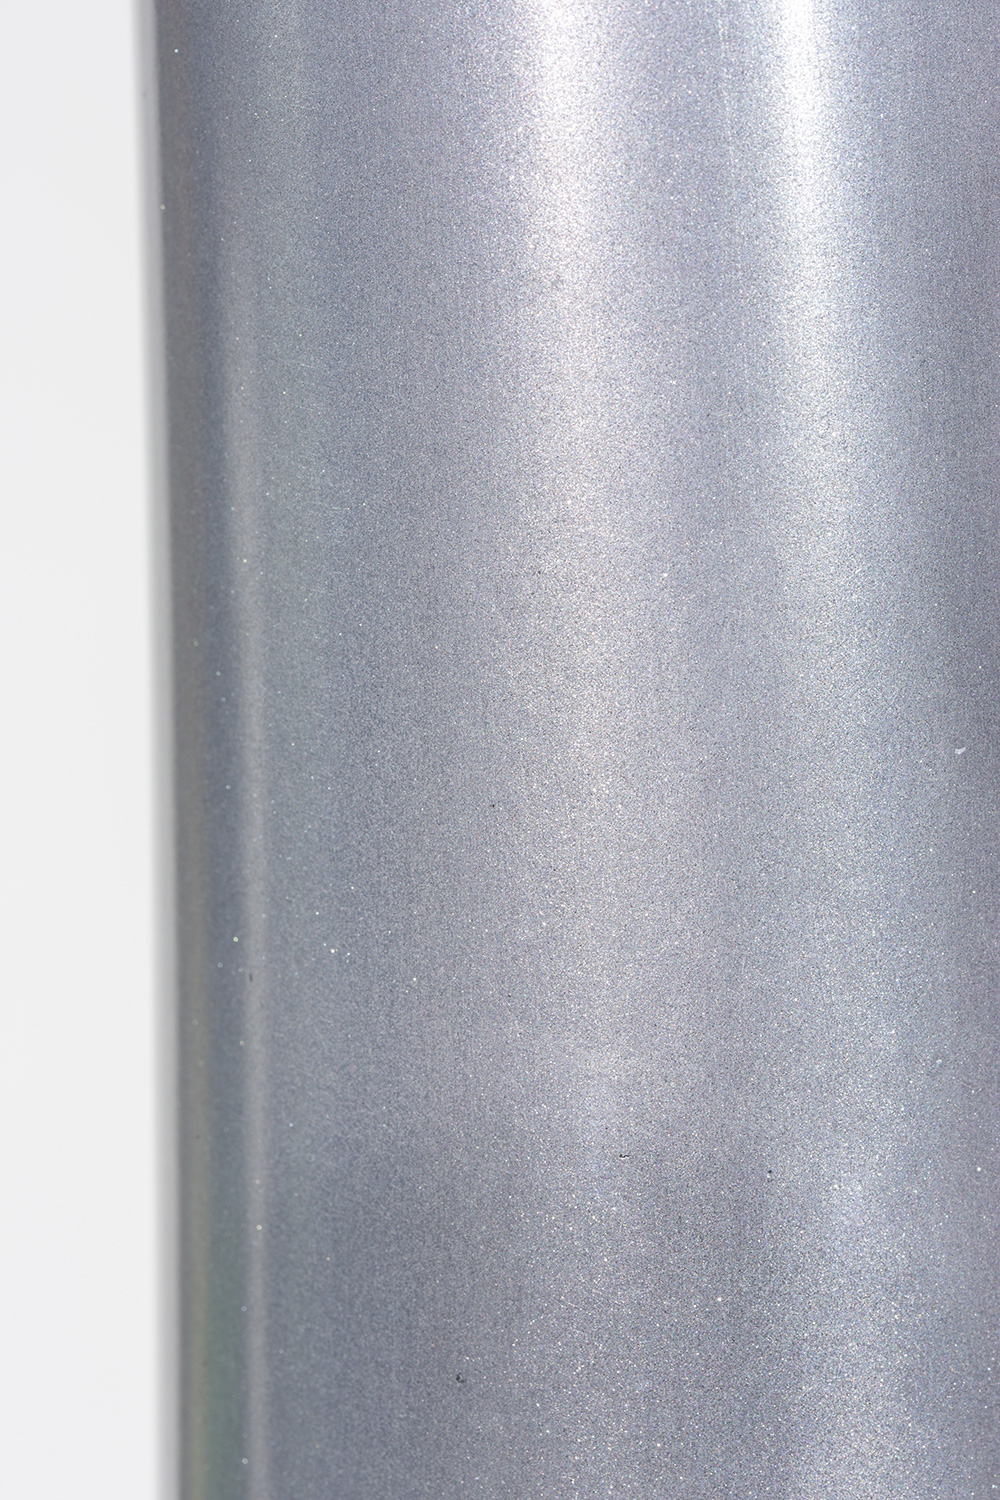 Glory Bodenvase, 30/180 cm, aluminium L: 30 B: 30 H: 180 | aluminium